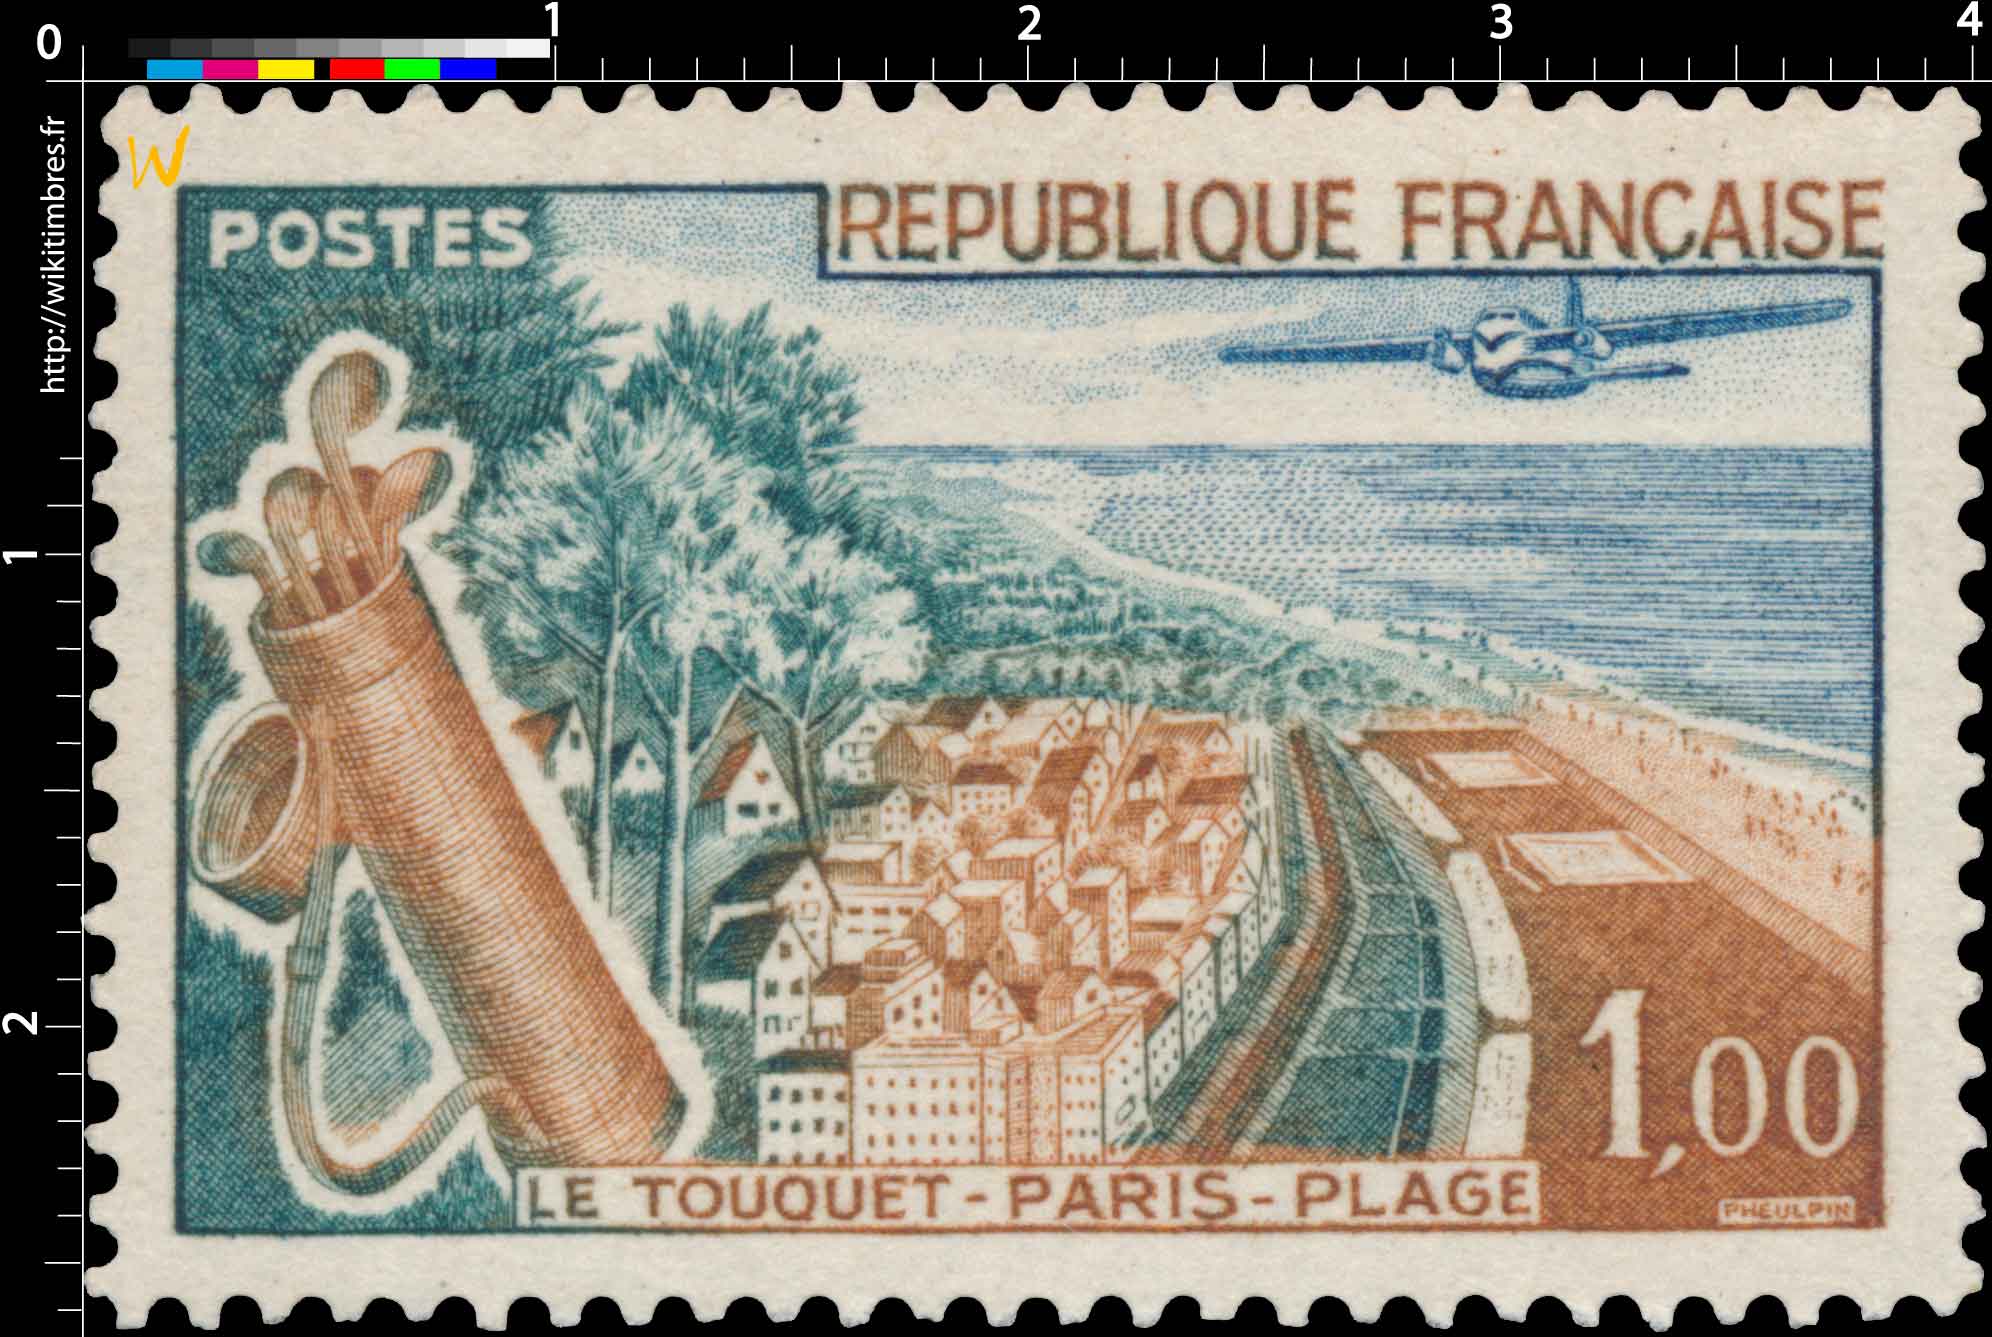 LE TOUQUET-PARIS-PLAGE